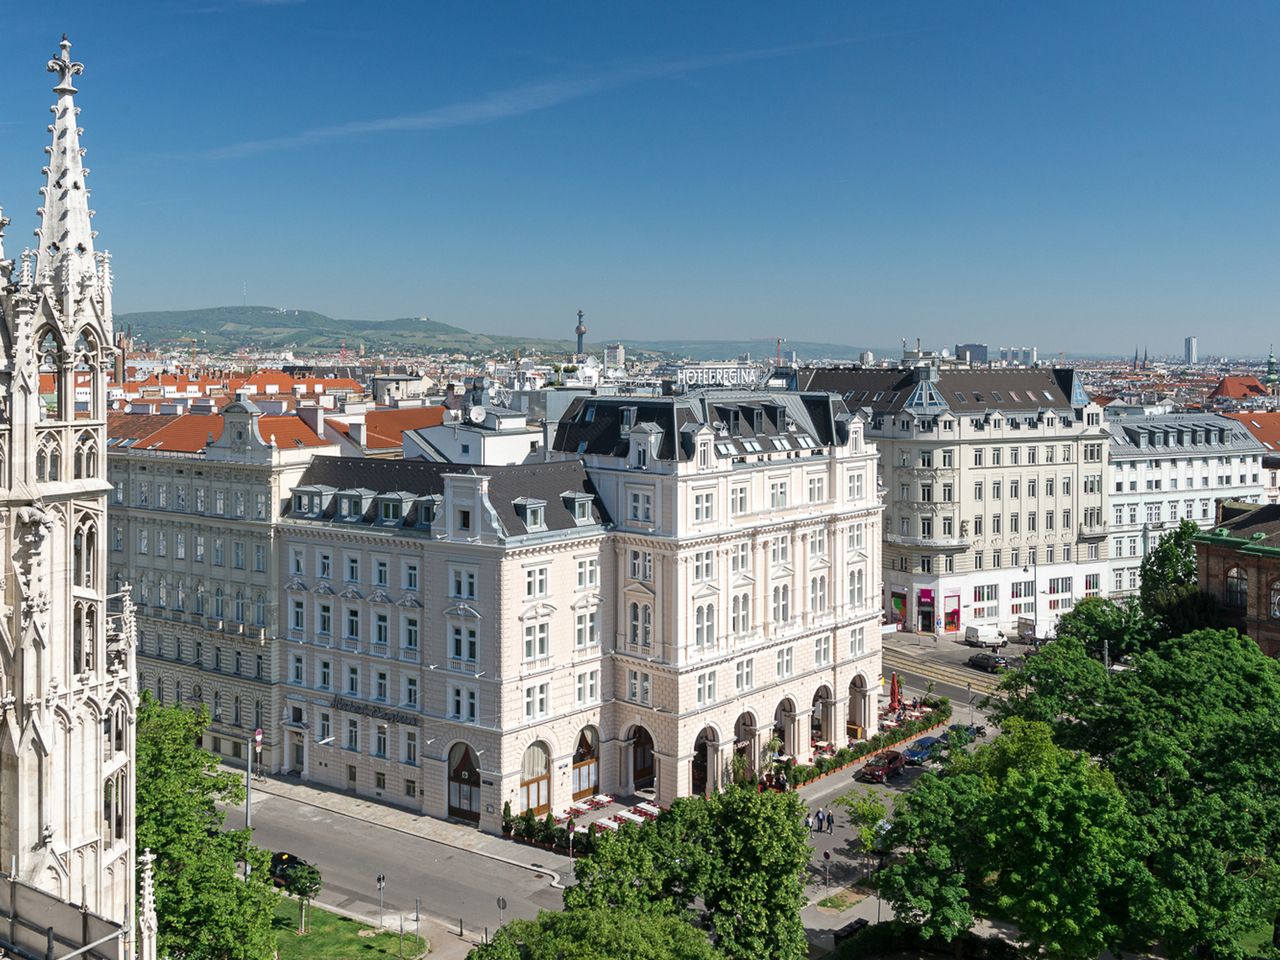 Das wunderschöne Wien erleben - 2 Tage